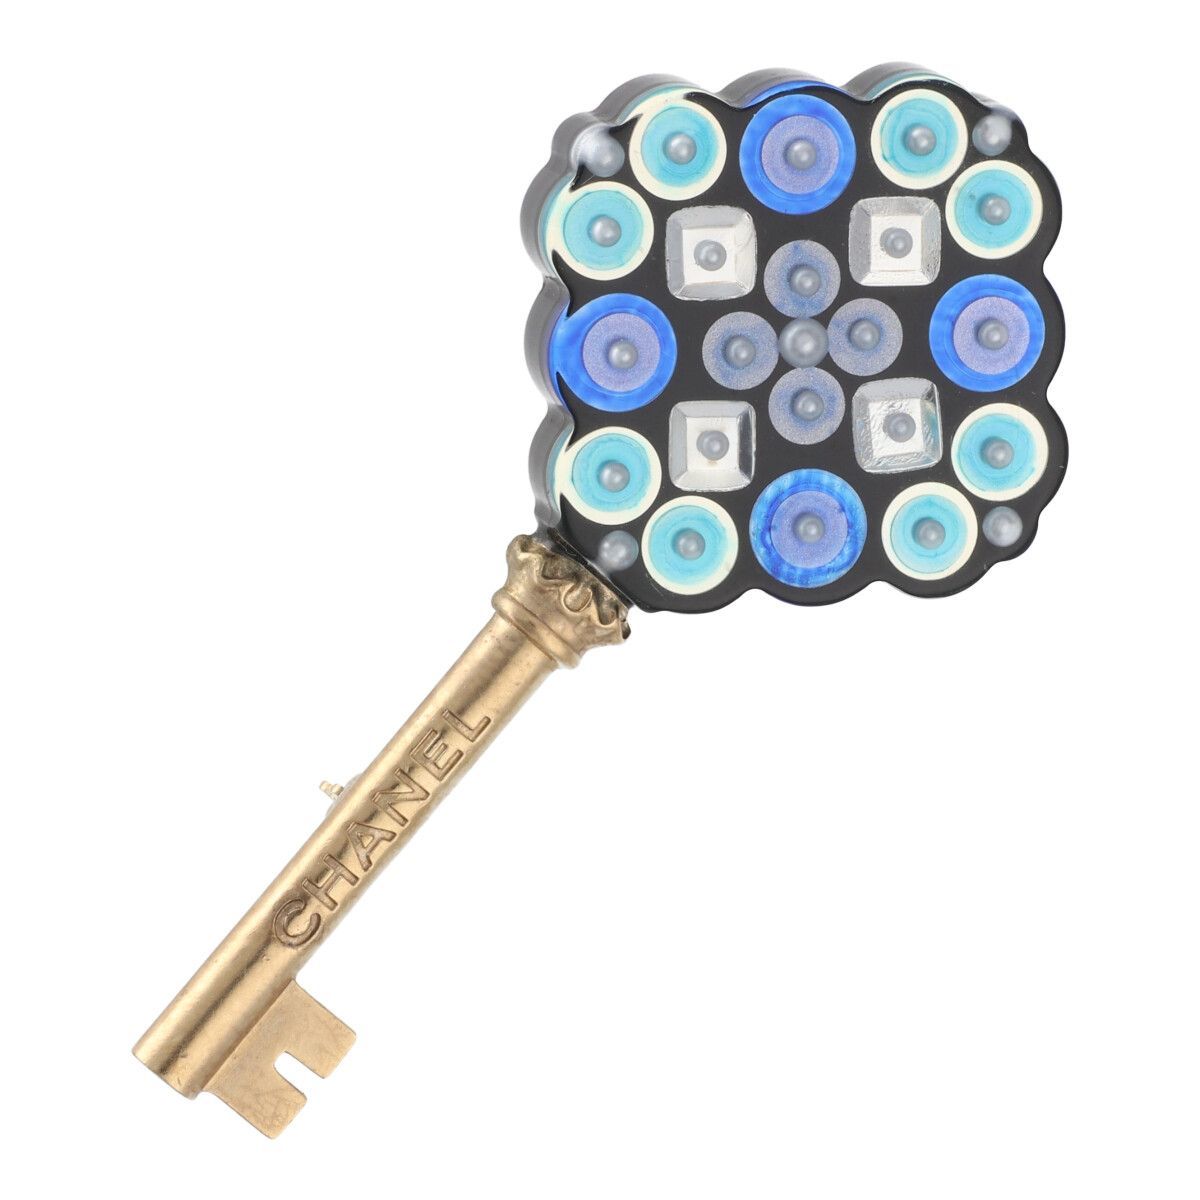 [ б/у ] CHANEL Chanel брошь 17A ключ узор голубой поддельный жемчуг mo The ik амулет ювелирные изделия 23021739 MK